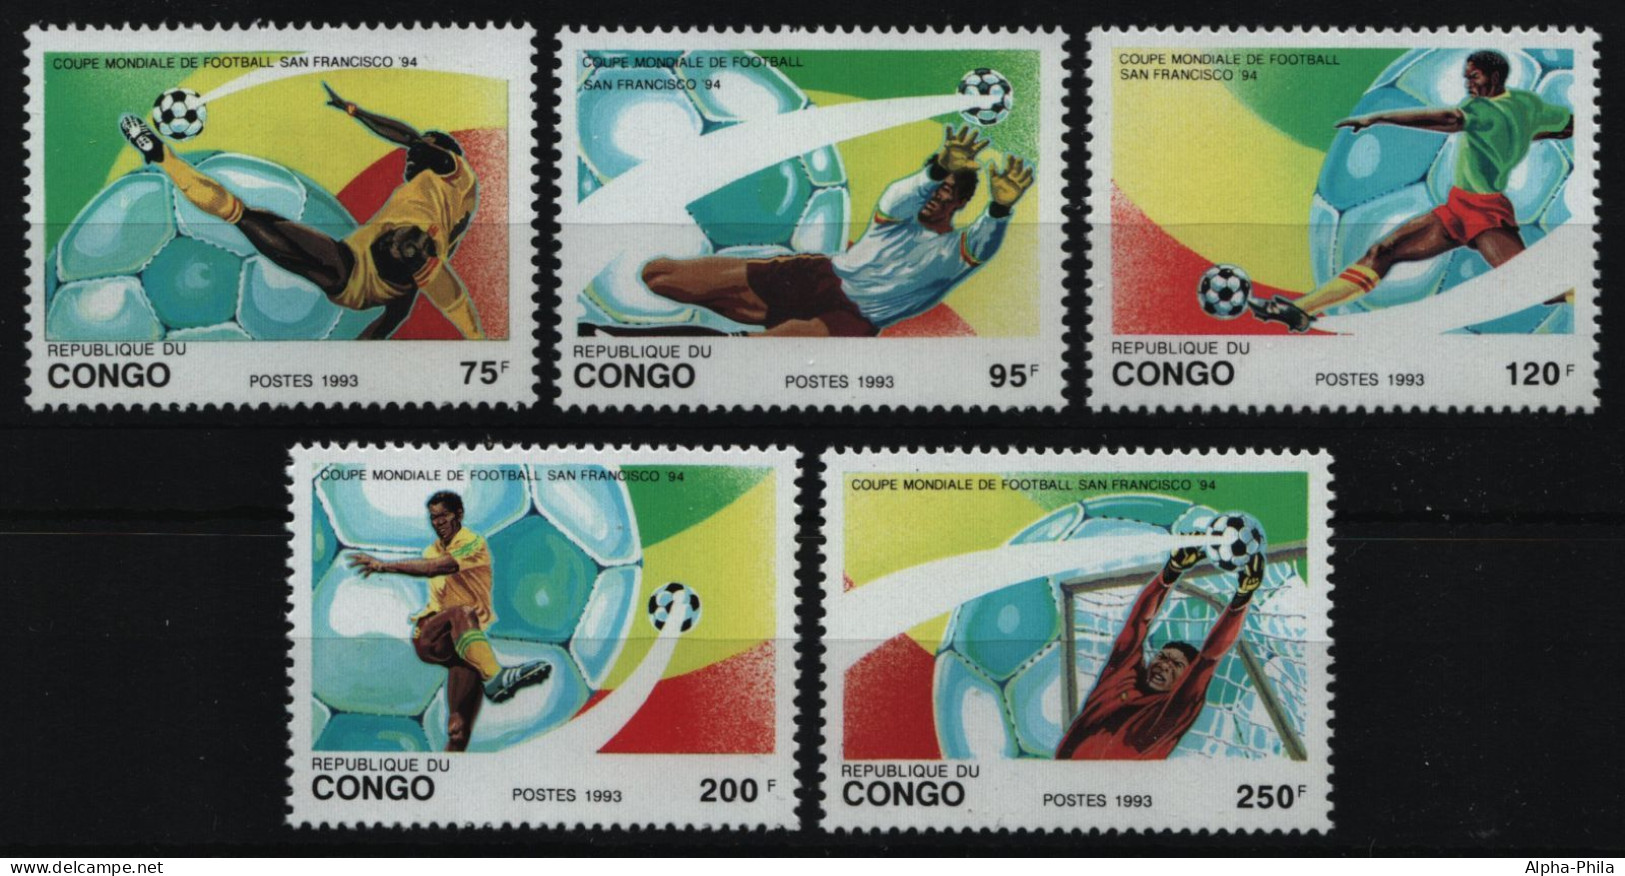 Kongo-Brazzaville 1993 - Mi-Nr. 1357-1361 ** - MNH - Fußball / Soccer - Neufs